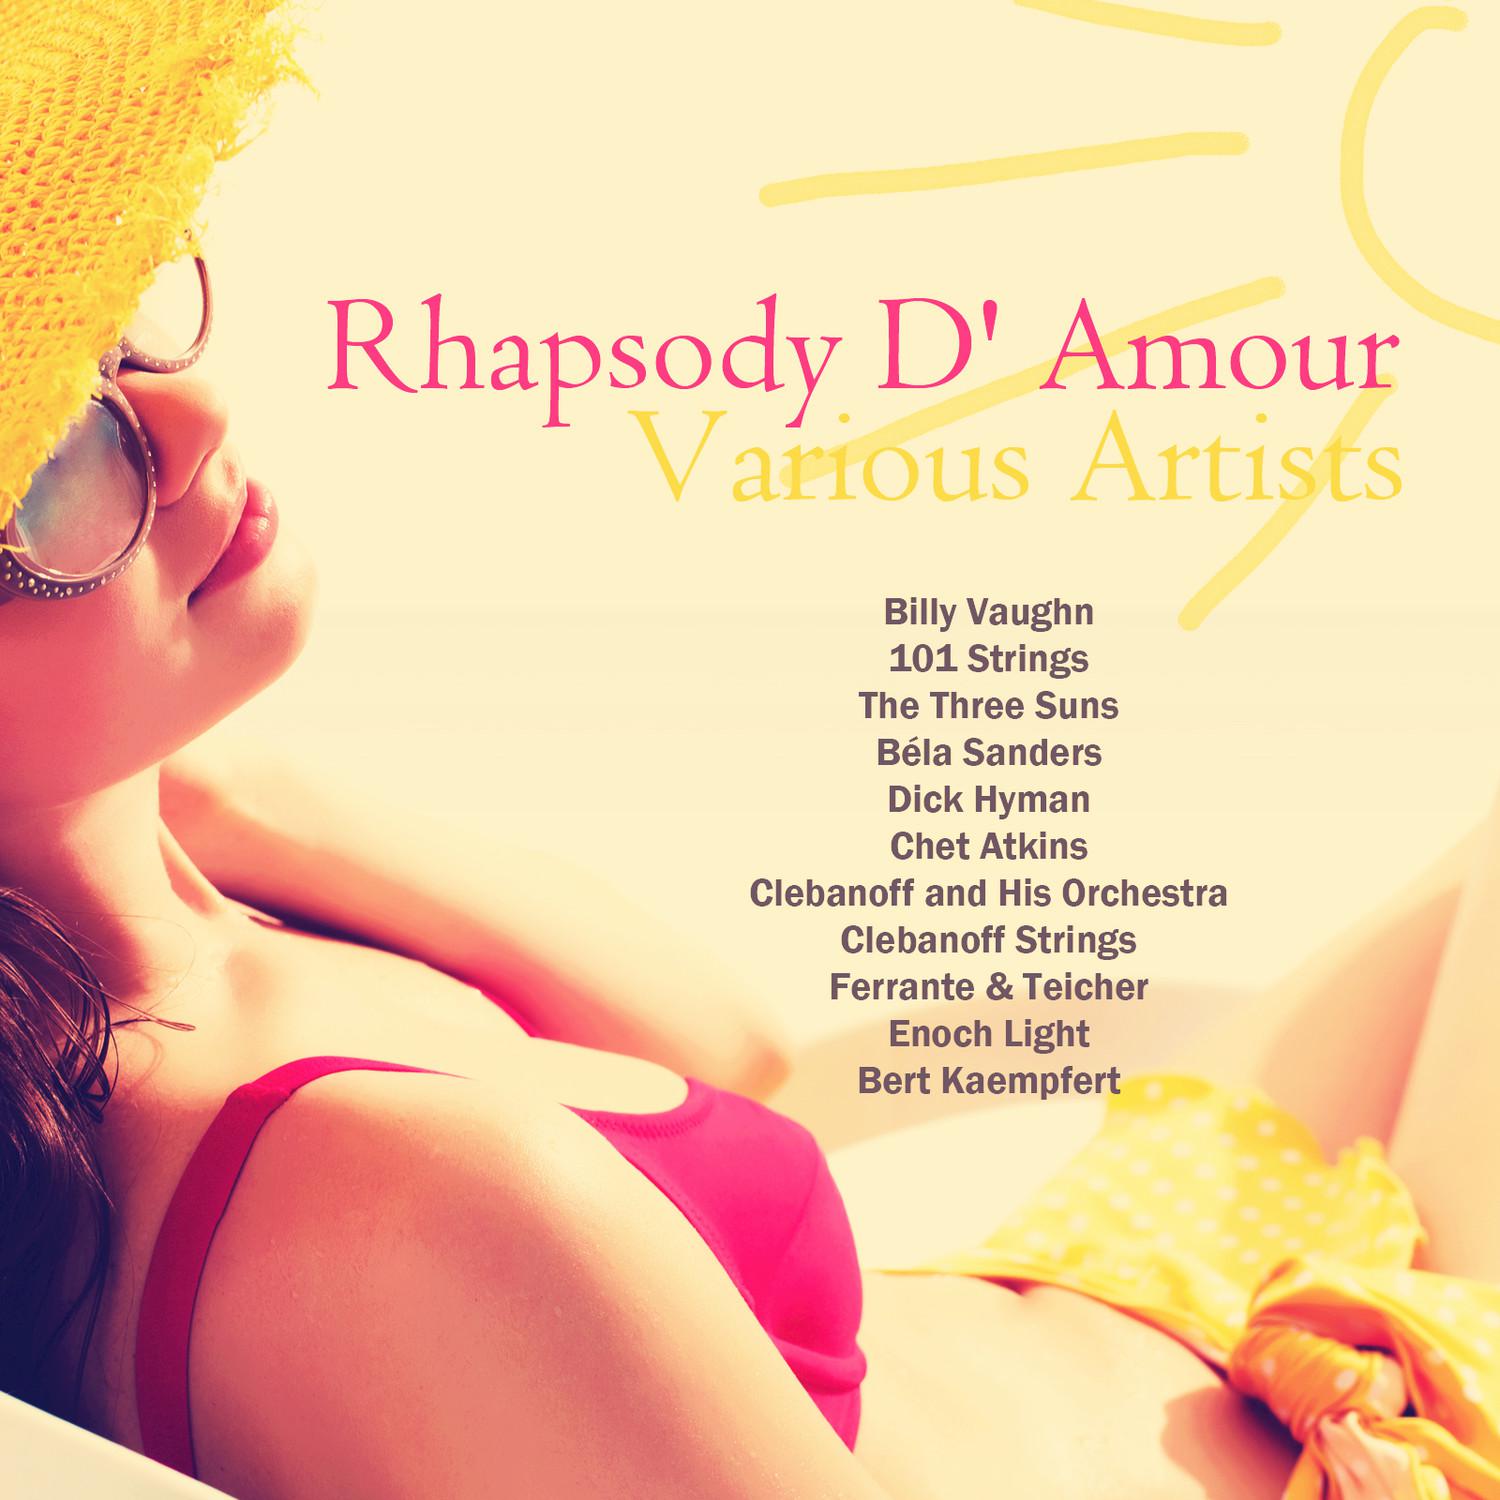 Rhapsody D' Amour